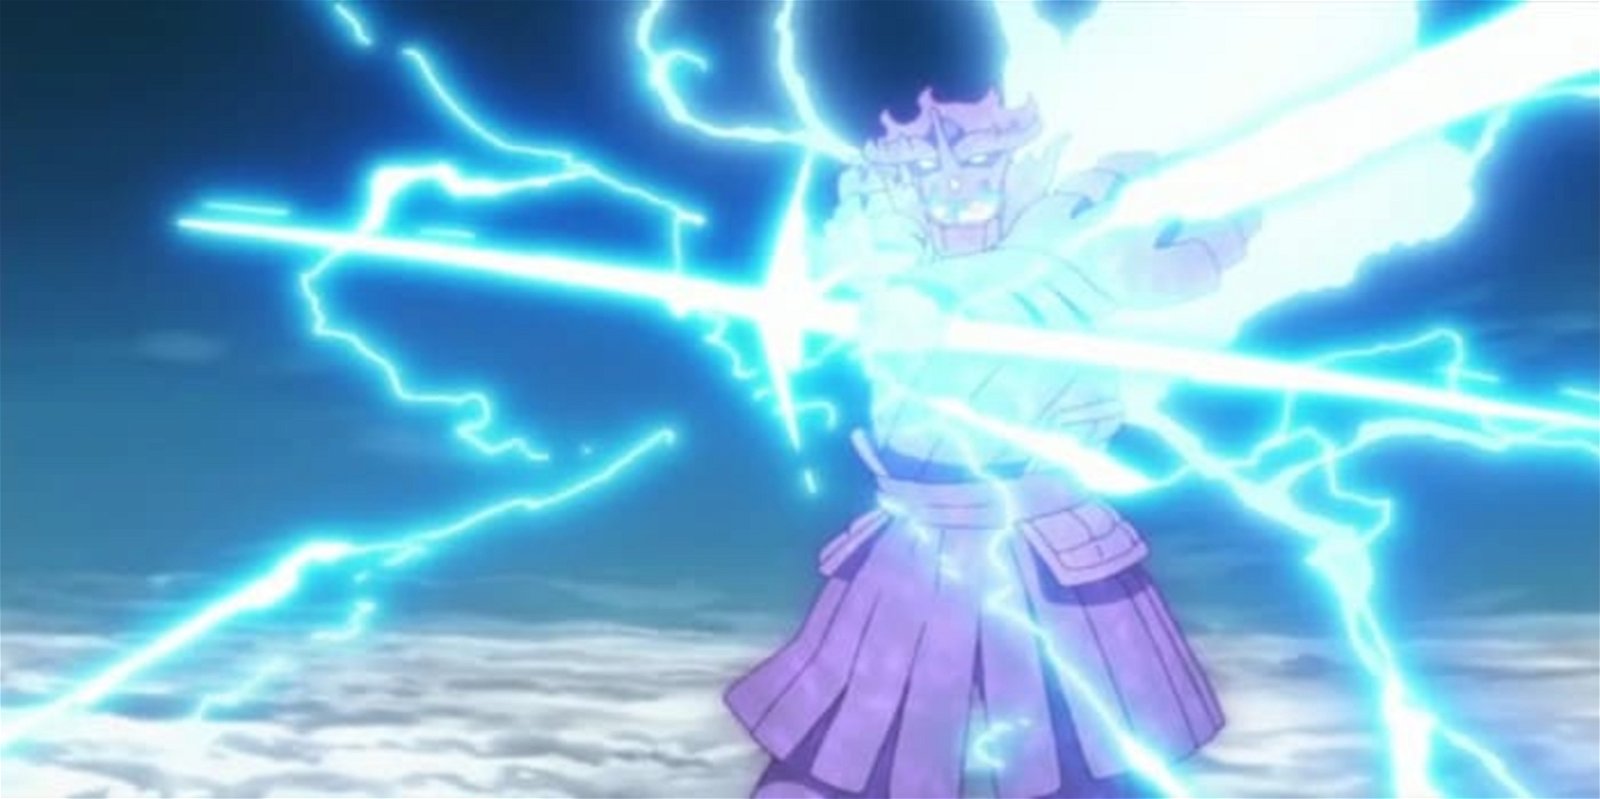 Durante su batalla final contra Naruto, Sasuke utilizó su ataque Raiton más poderoso, la Flecha de Indra